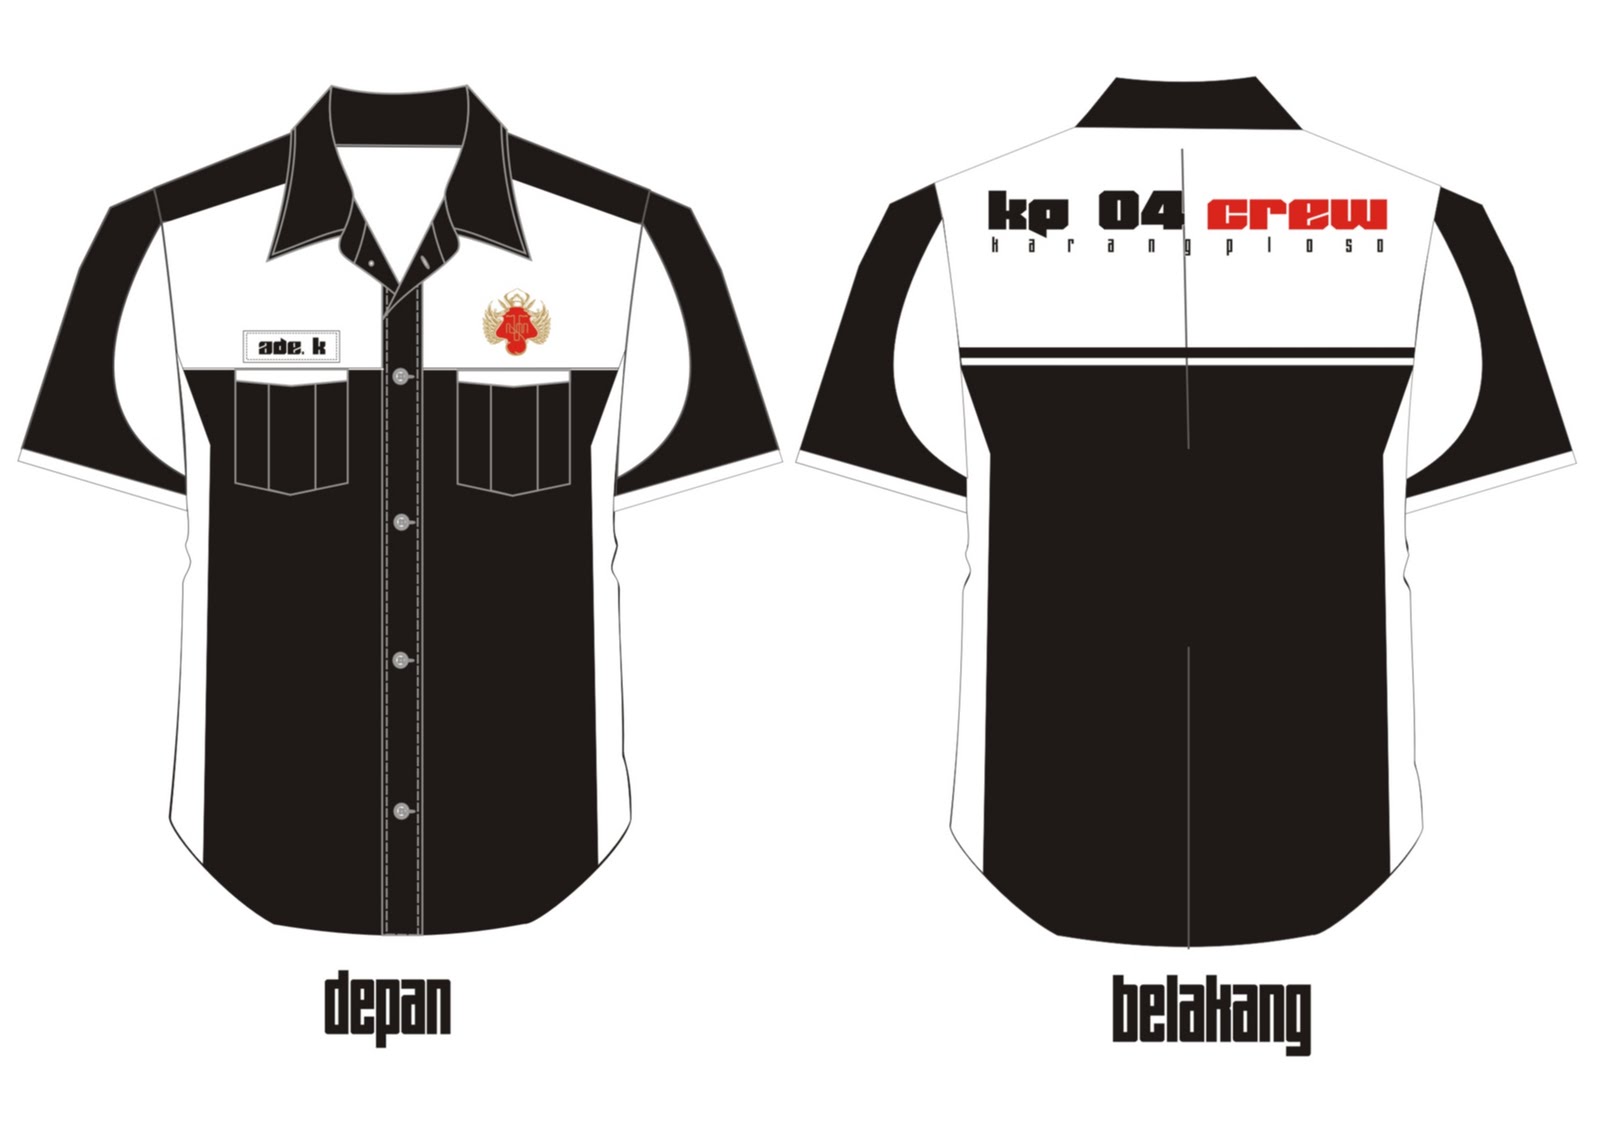 Crew KP 04 Desain  Baju  Ham Untuk Remaja Crew04 